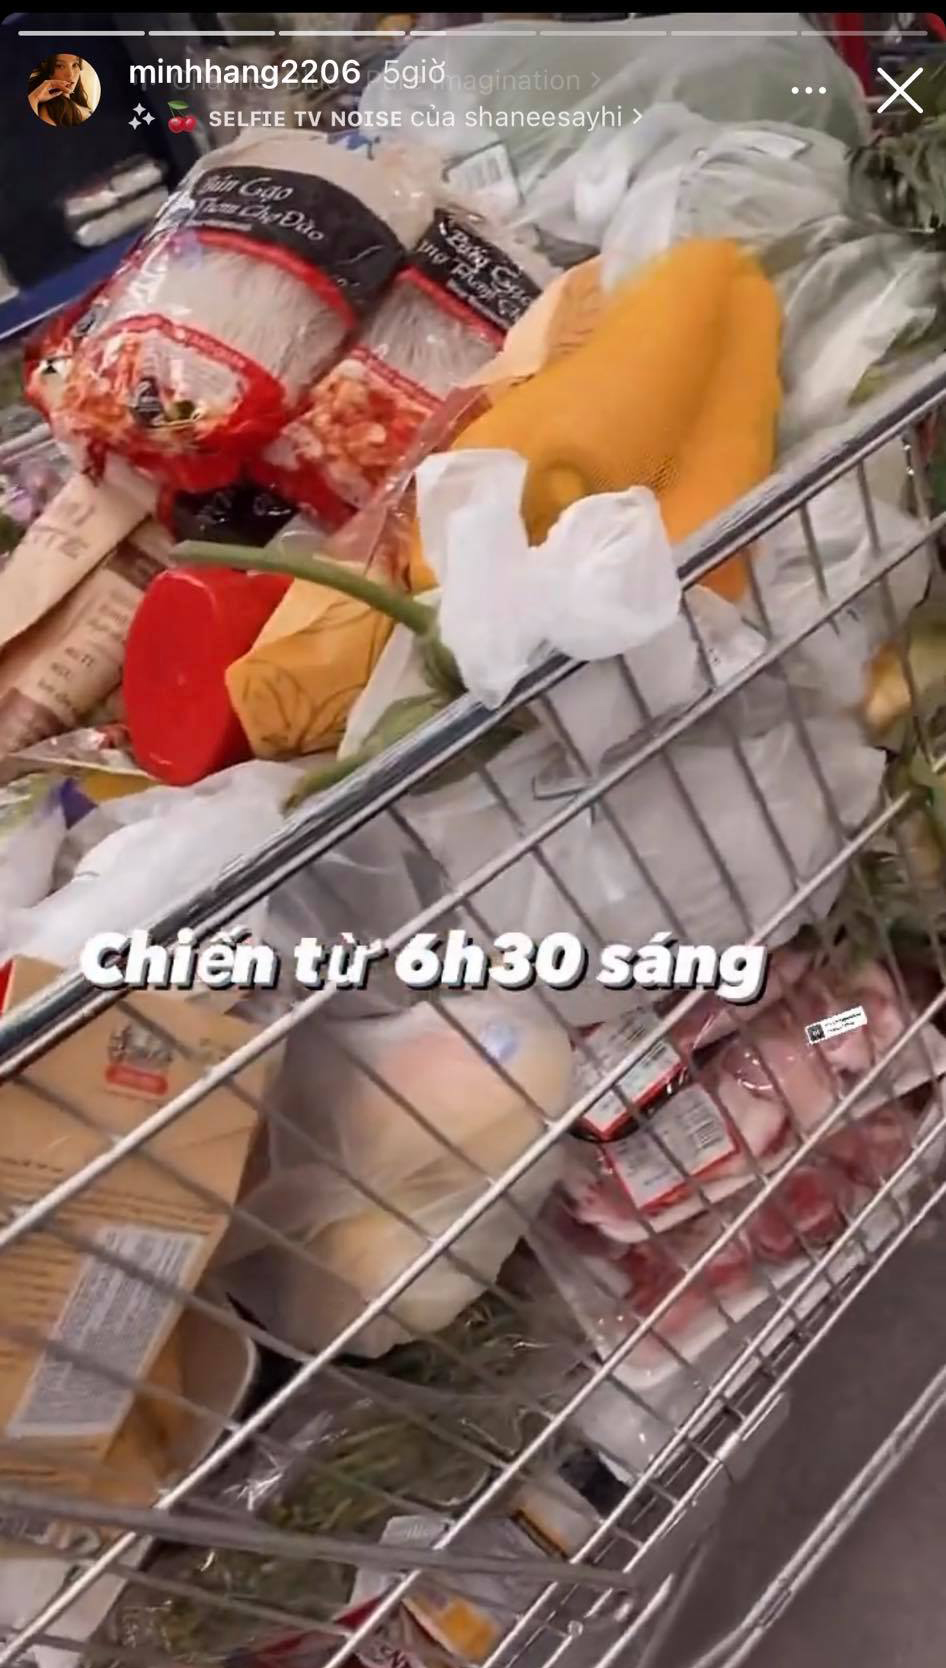 Choáng trước hoá đơn đi siêu thị mùa dịch dài 1m7 của Minh Hằng